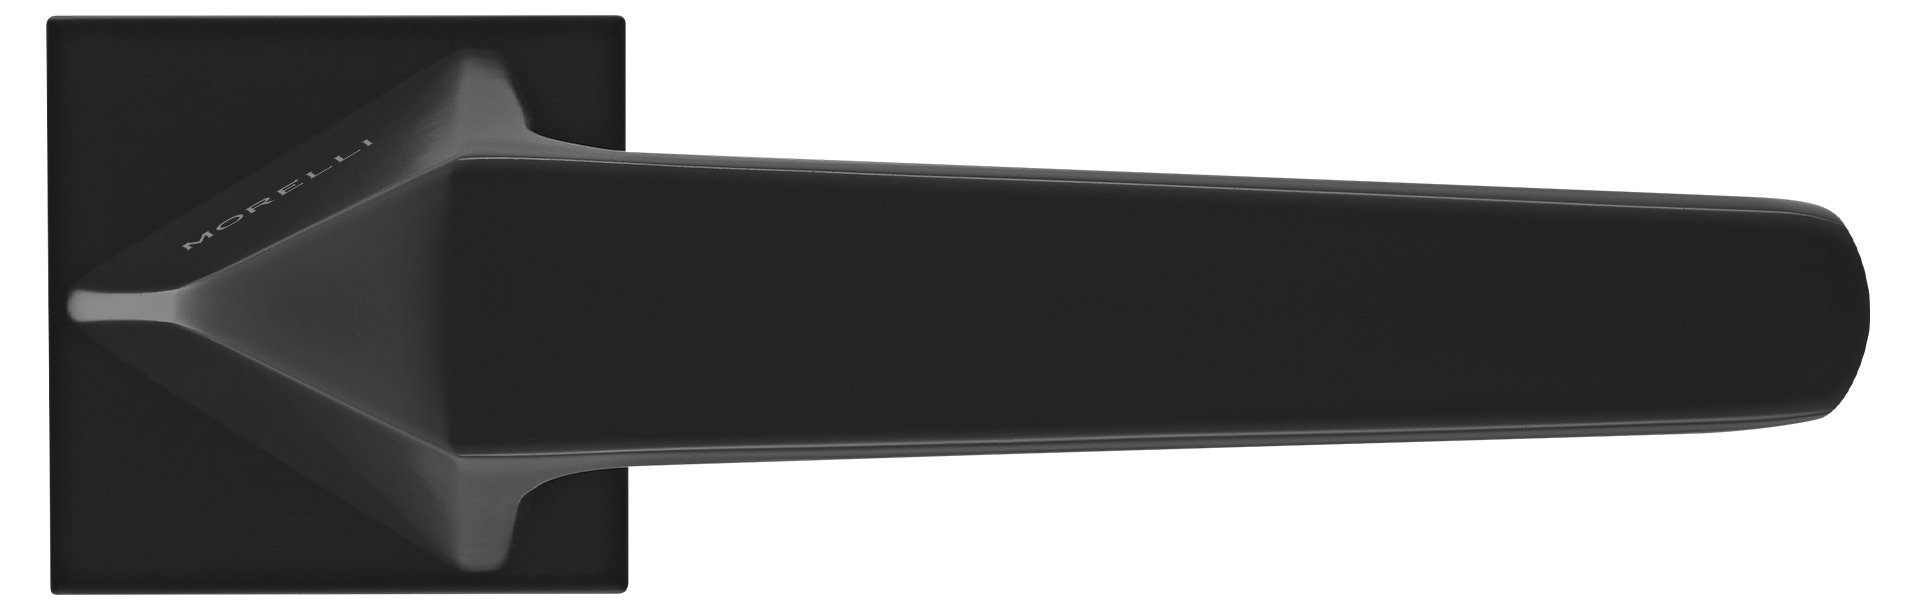 SOUK ручка дверная на квадратной розетке 6 мм, MH-55-S6 BL, цвет - черный фото купить в Ижевске